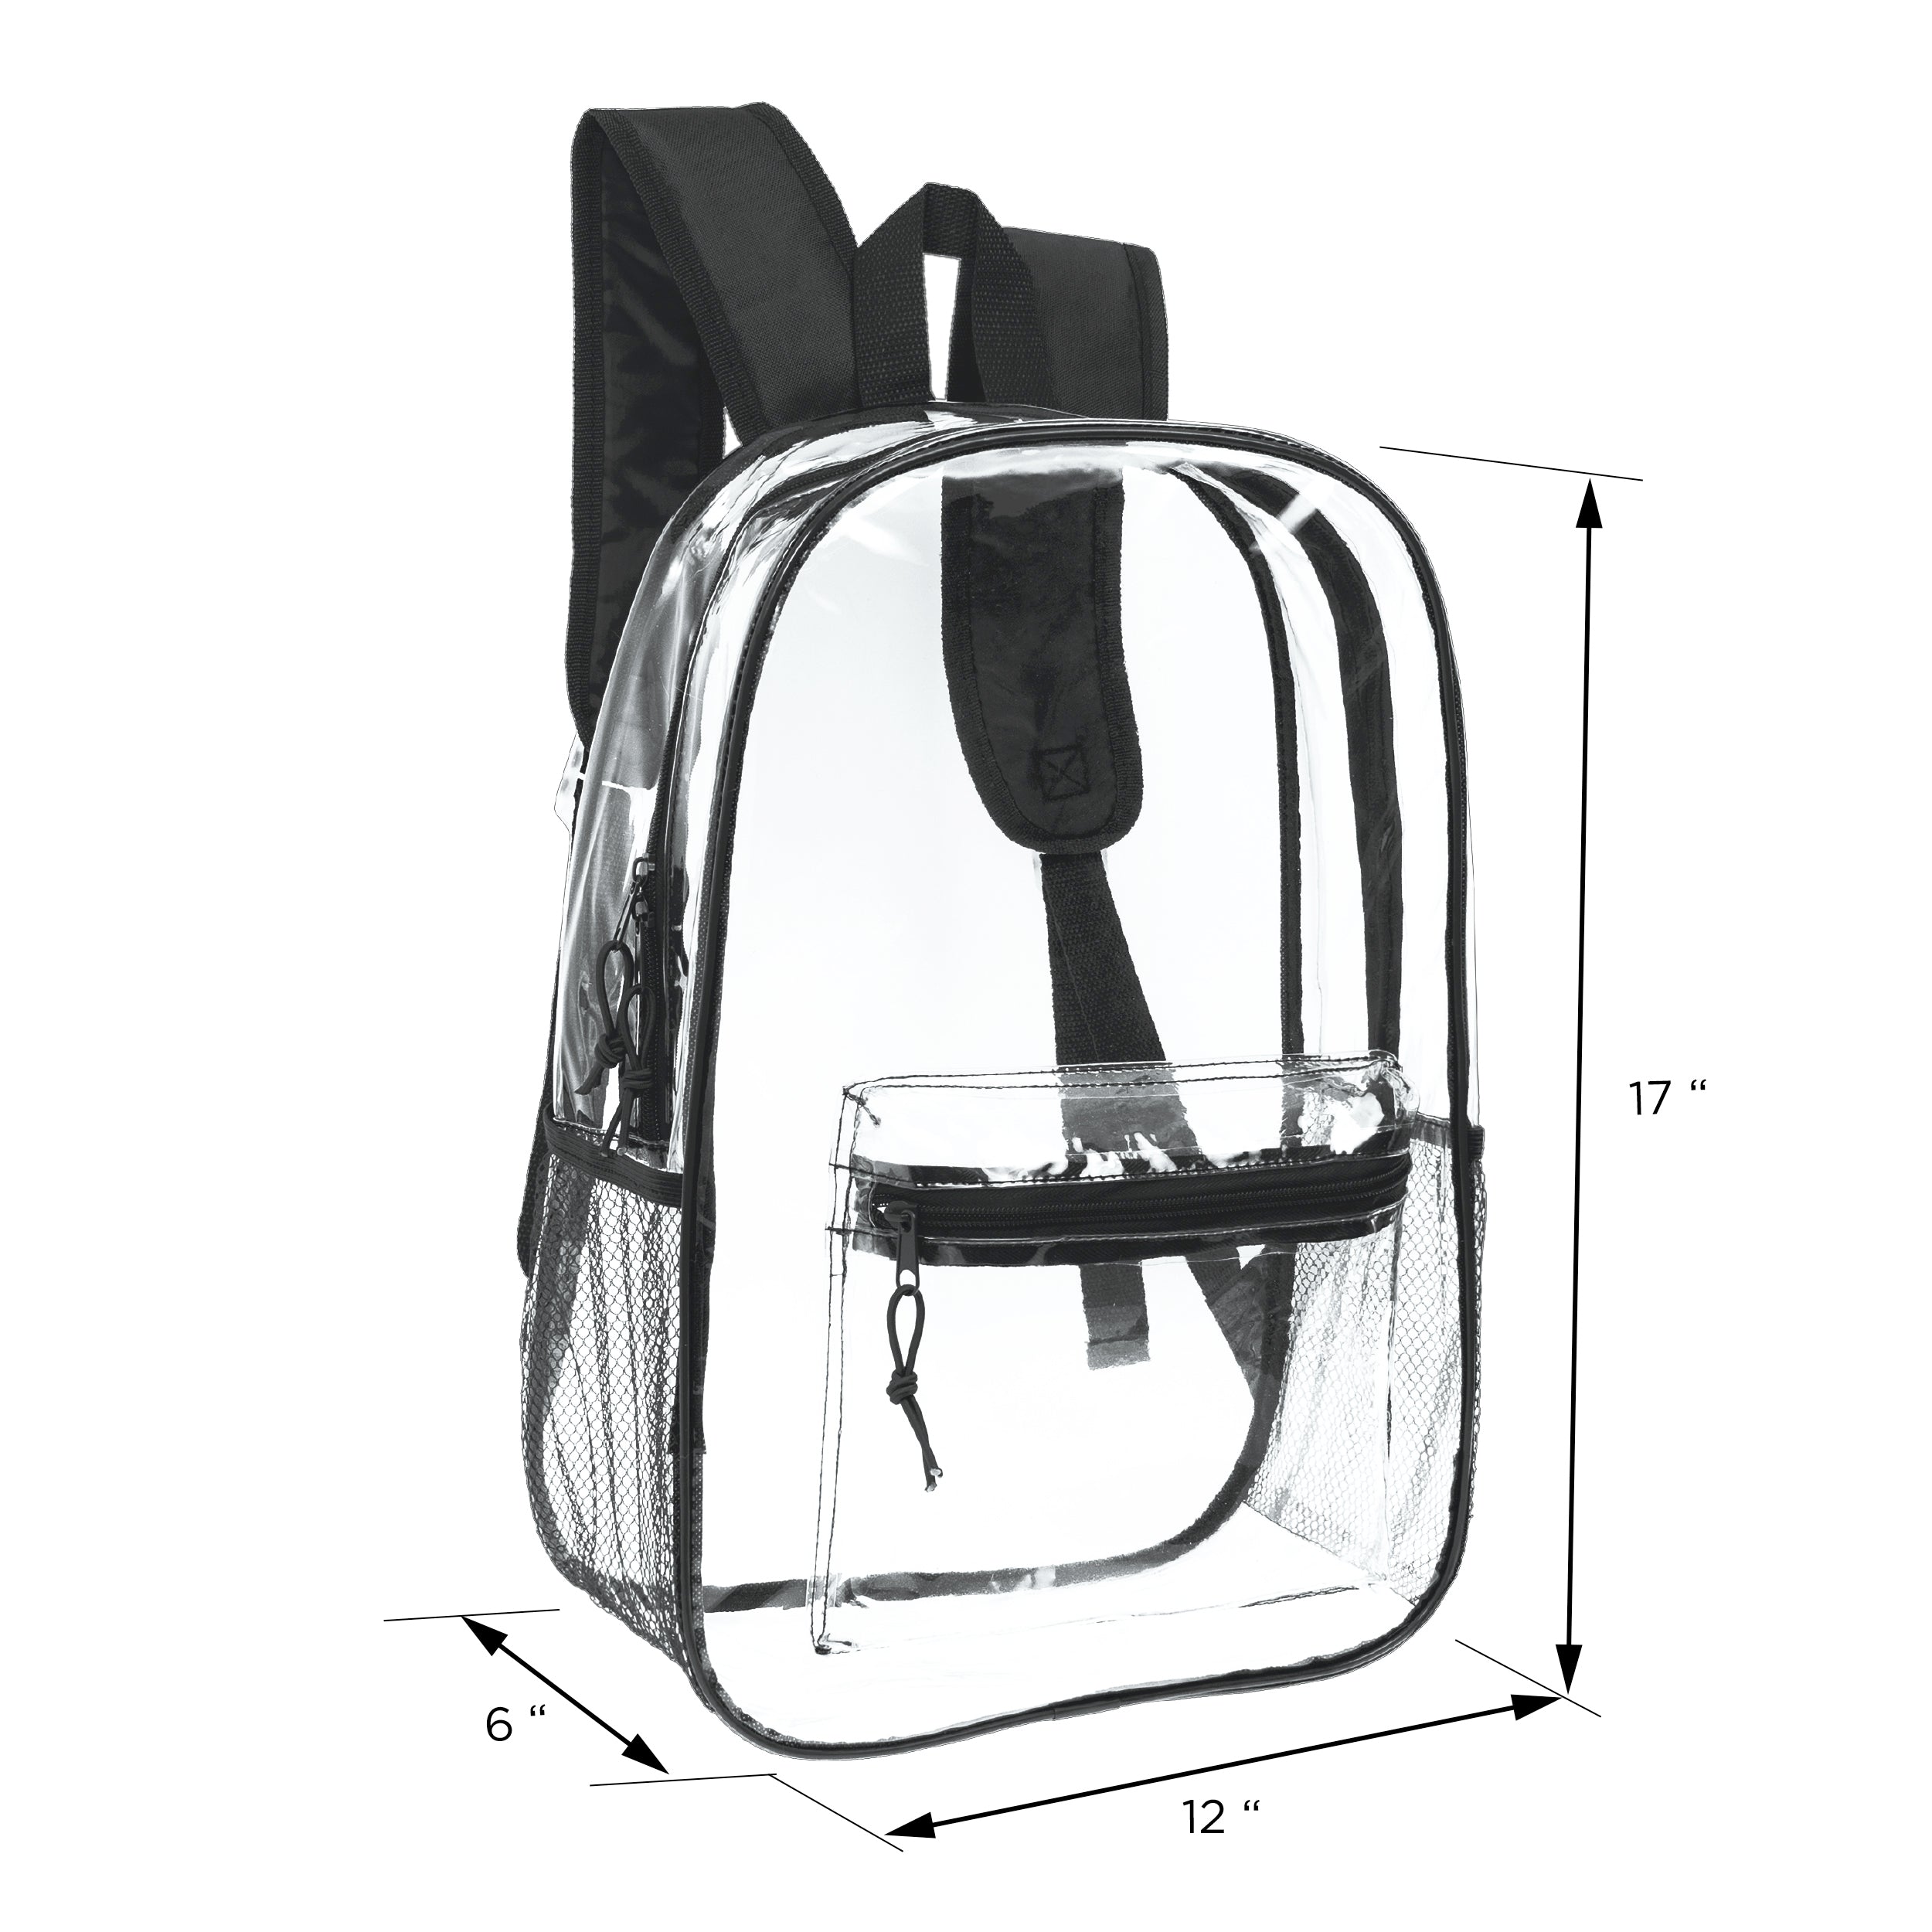 17" Transparent Wholesale Backpack in Black With Side Pocket - Bulk Case of 24